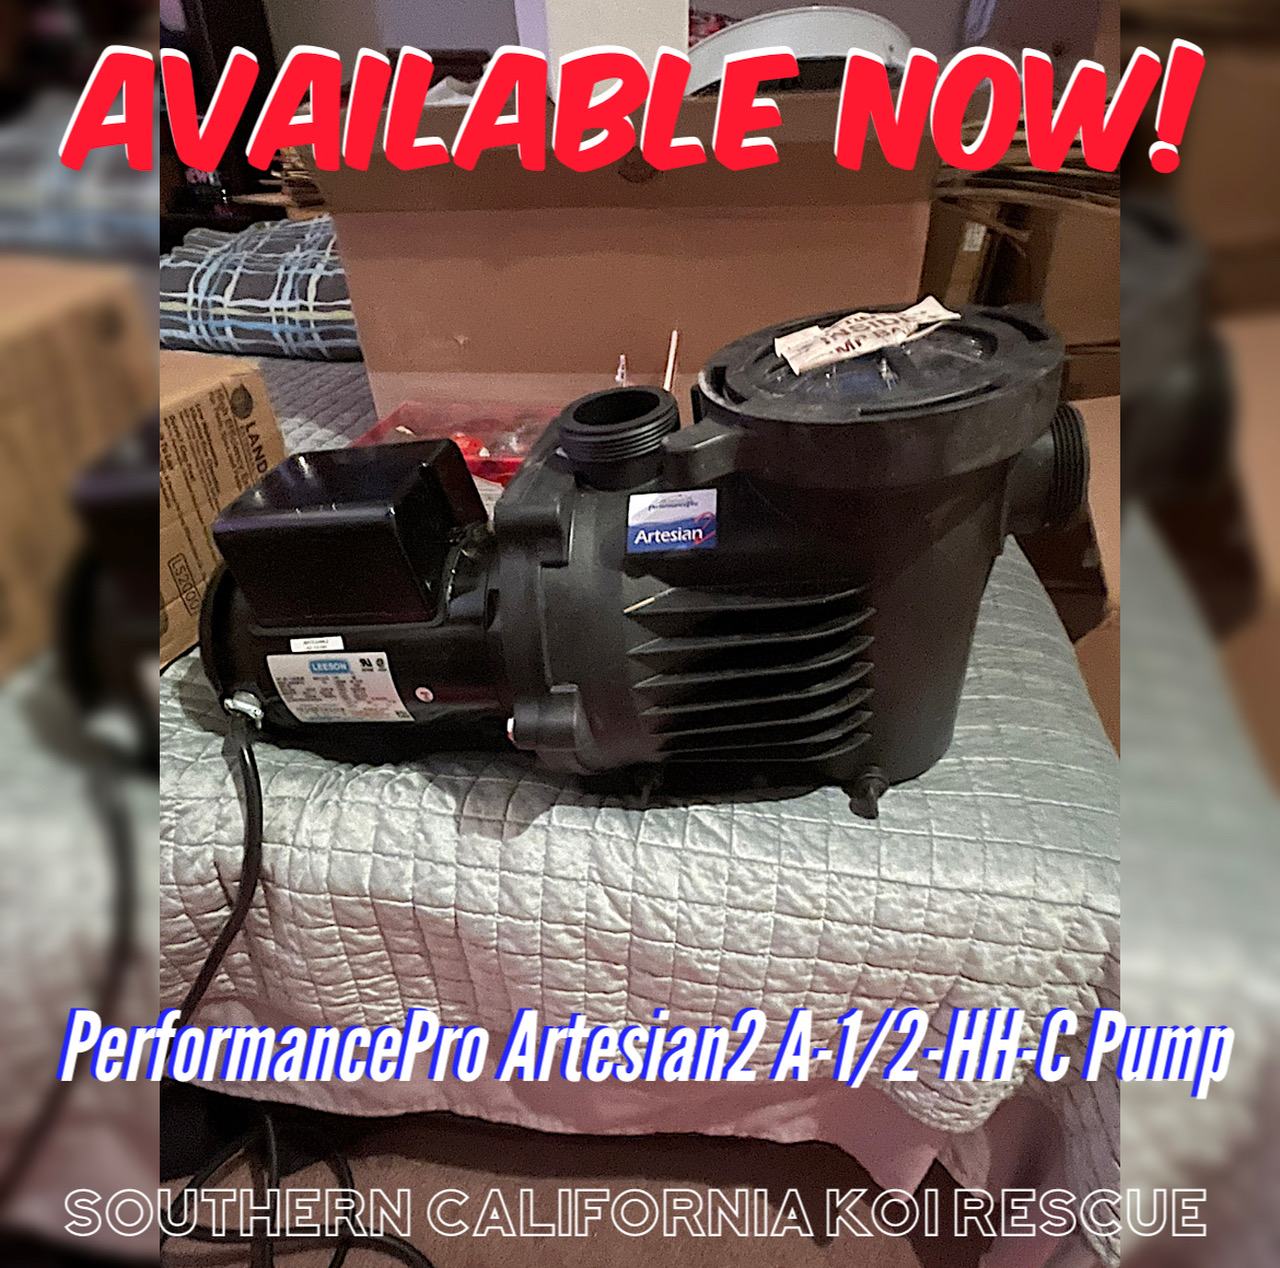 PerformancePro Artesian2 A-1/2-HH-C Pump (New)